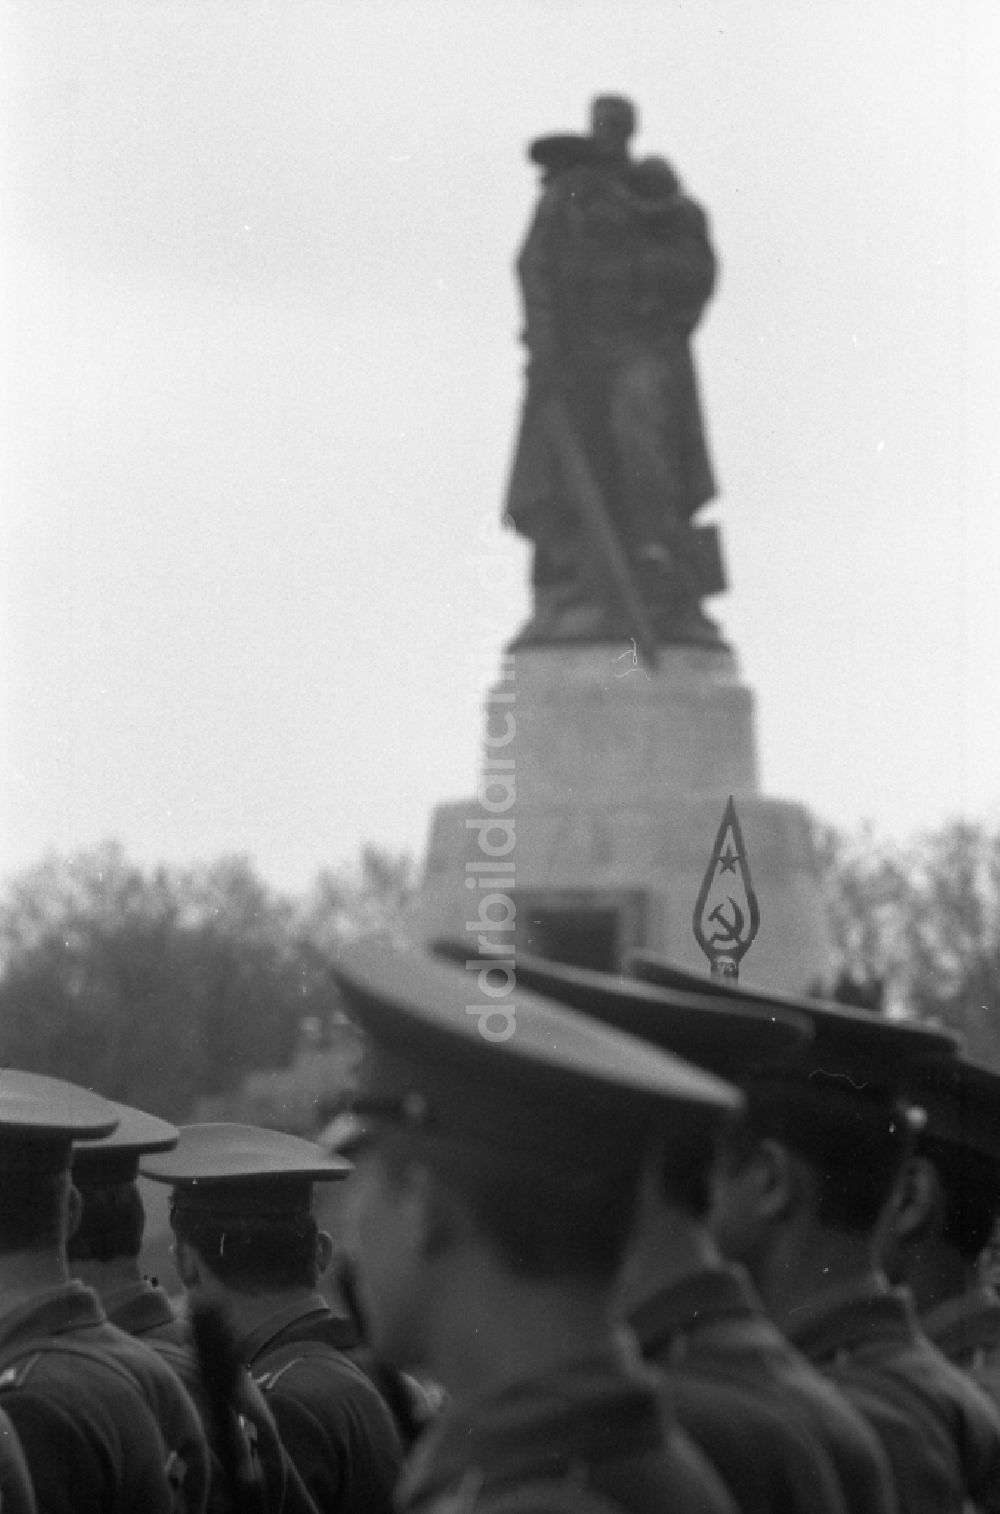 Berlin: Marschformation von Soldaten anläßlich einer Kranzniederlegung am Ehrenmal für die gefallenen sowjetischen Soldaten in Berlin in der DDR